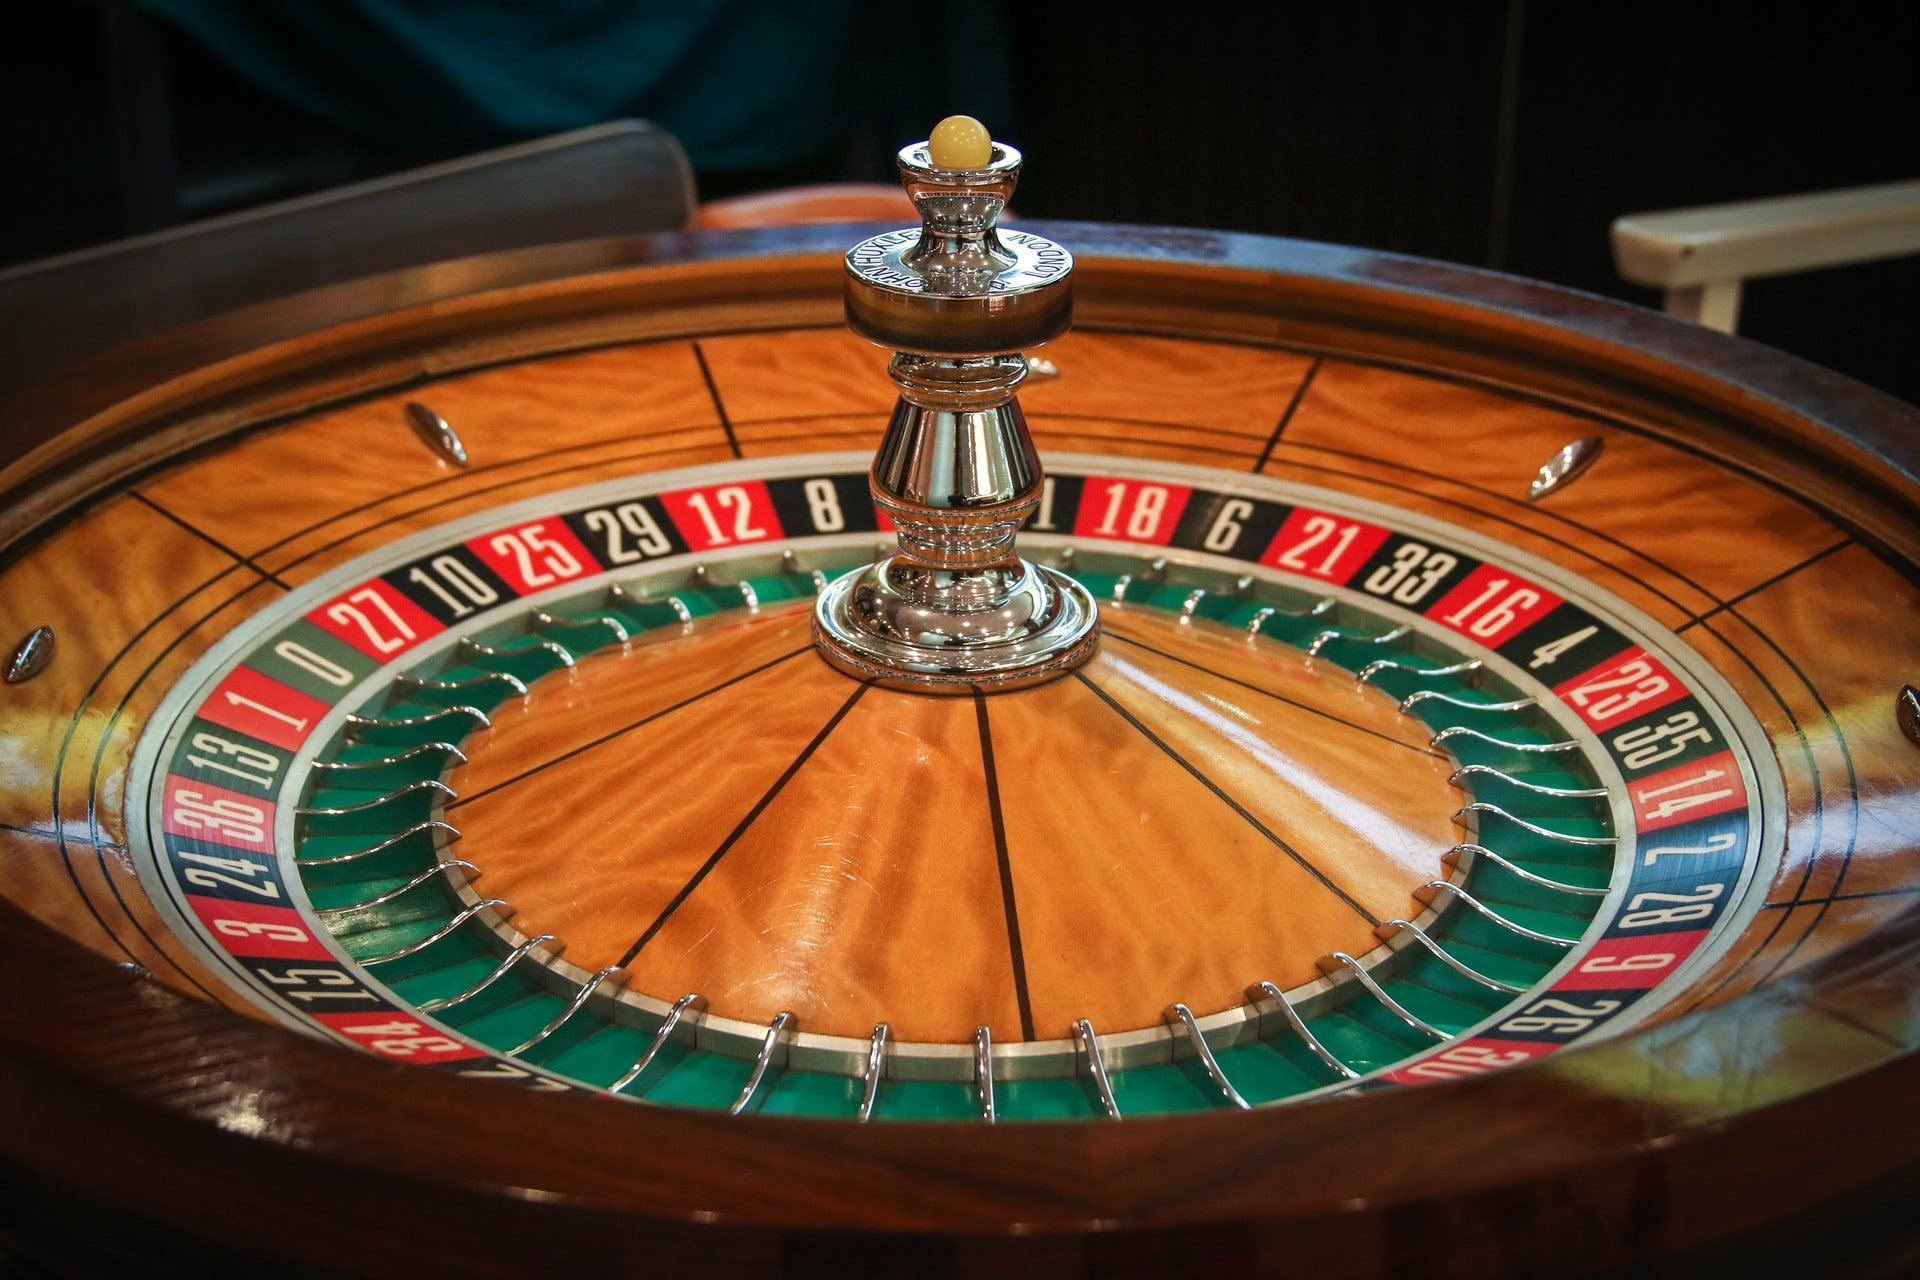 mejor casino online para jugar ala ruleta